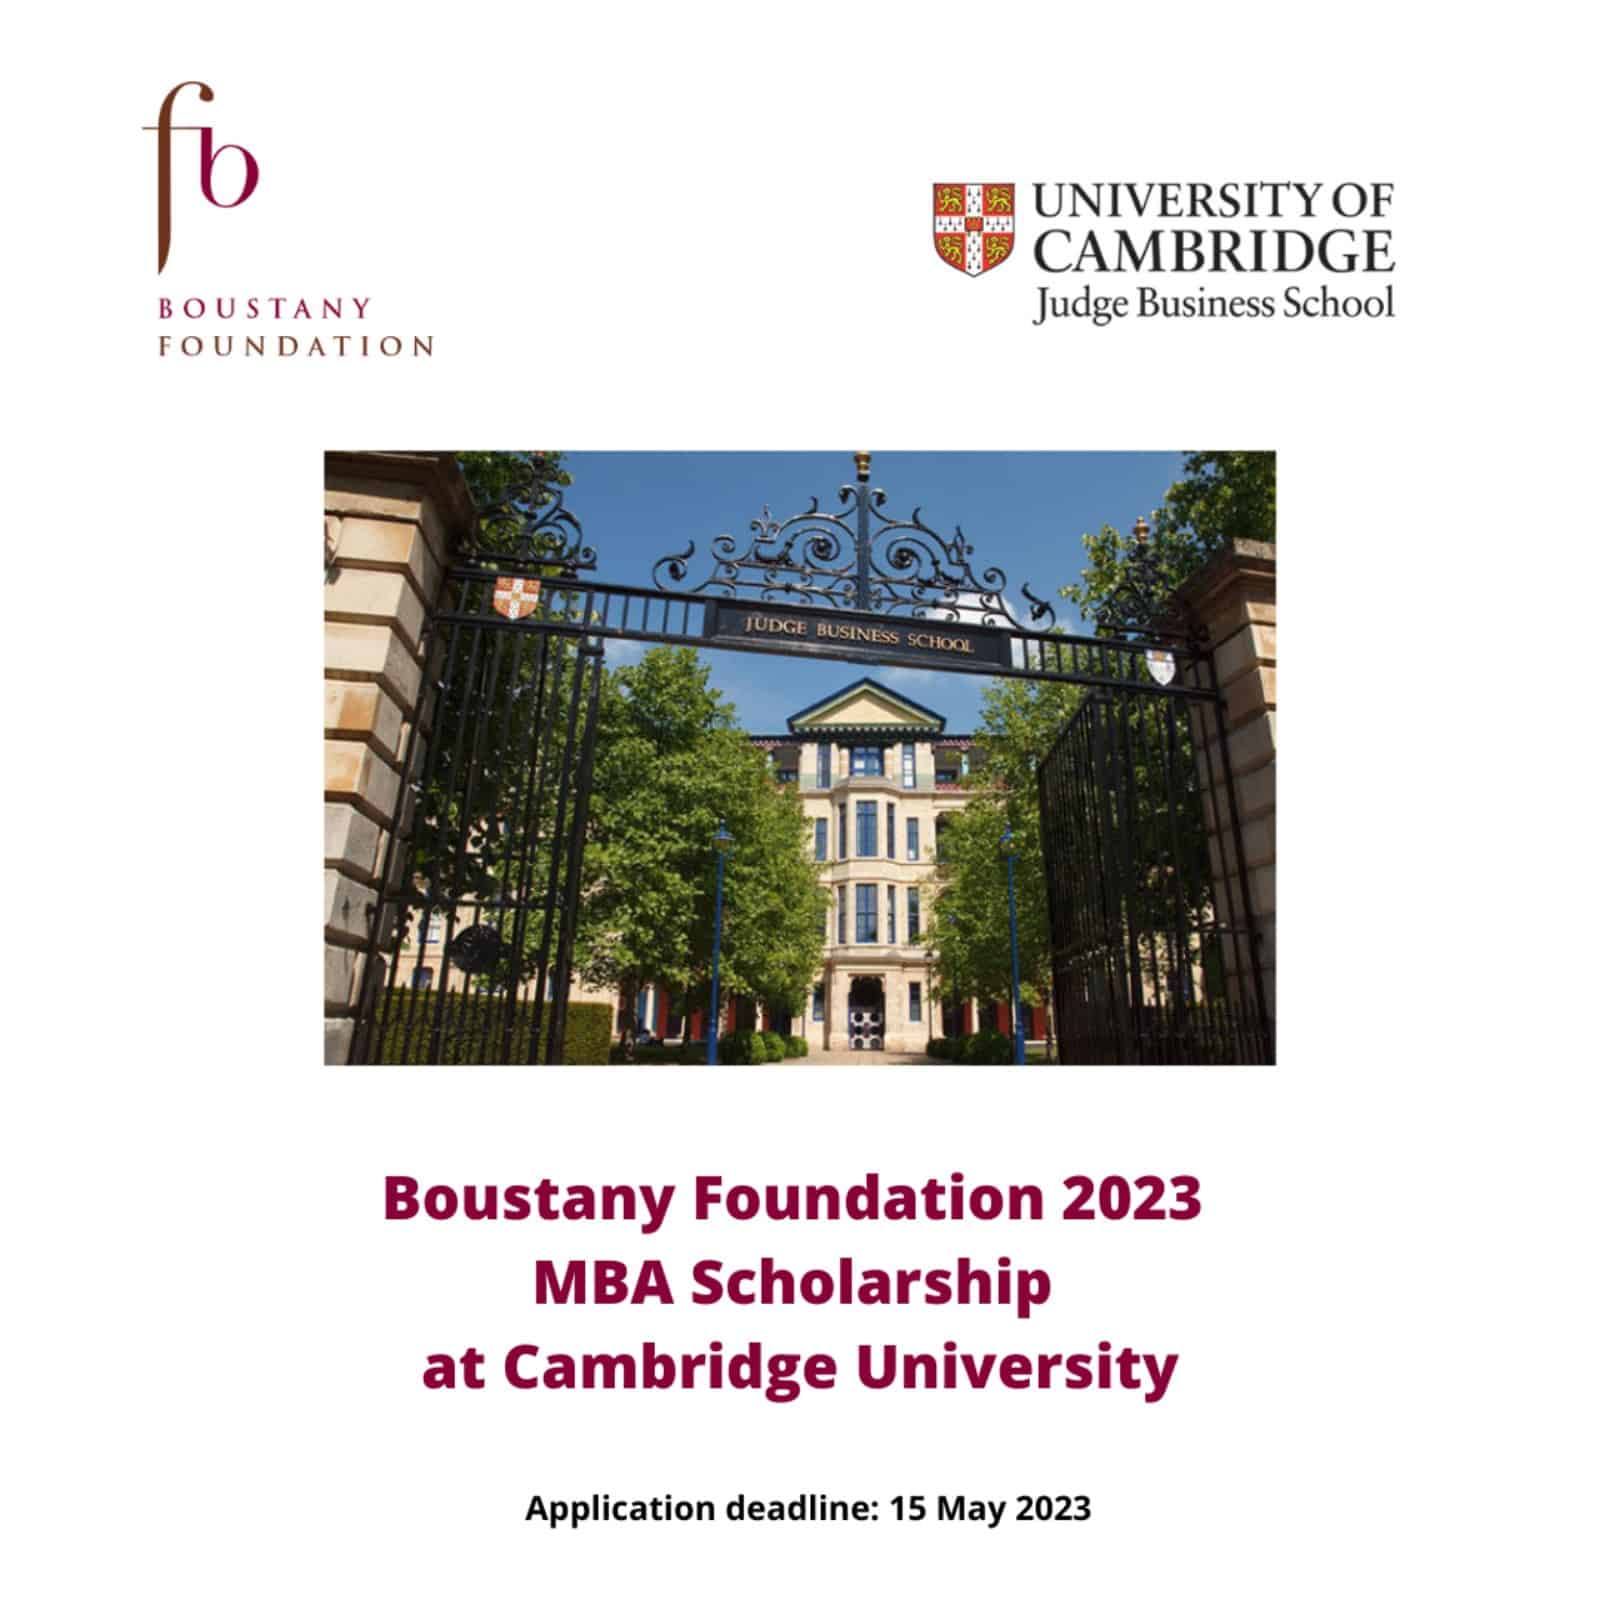 Boustany Foundation MBA Scholarship at Cambridge University 2023